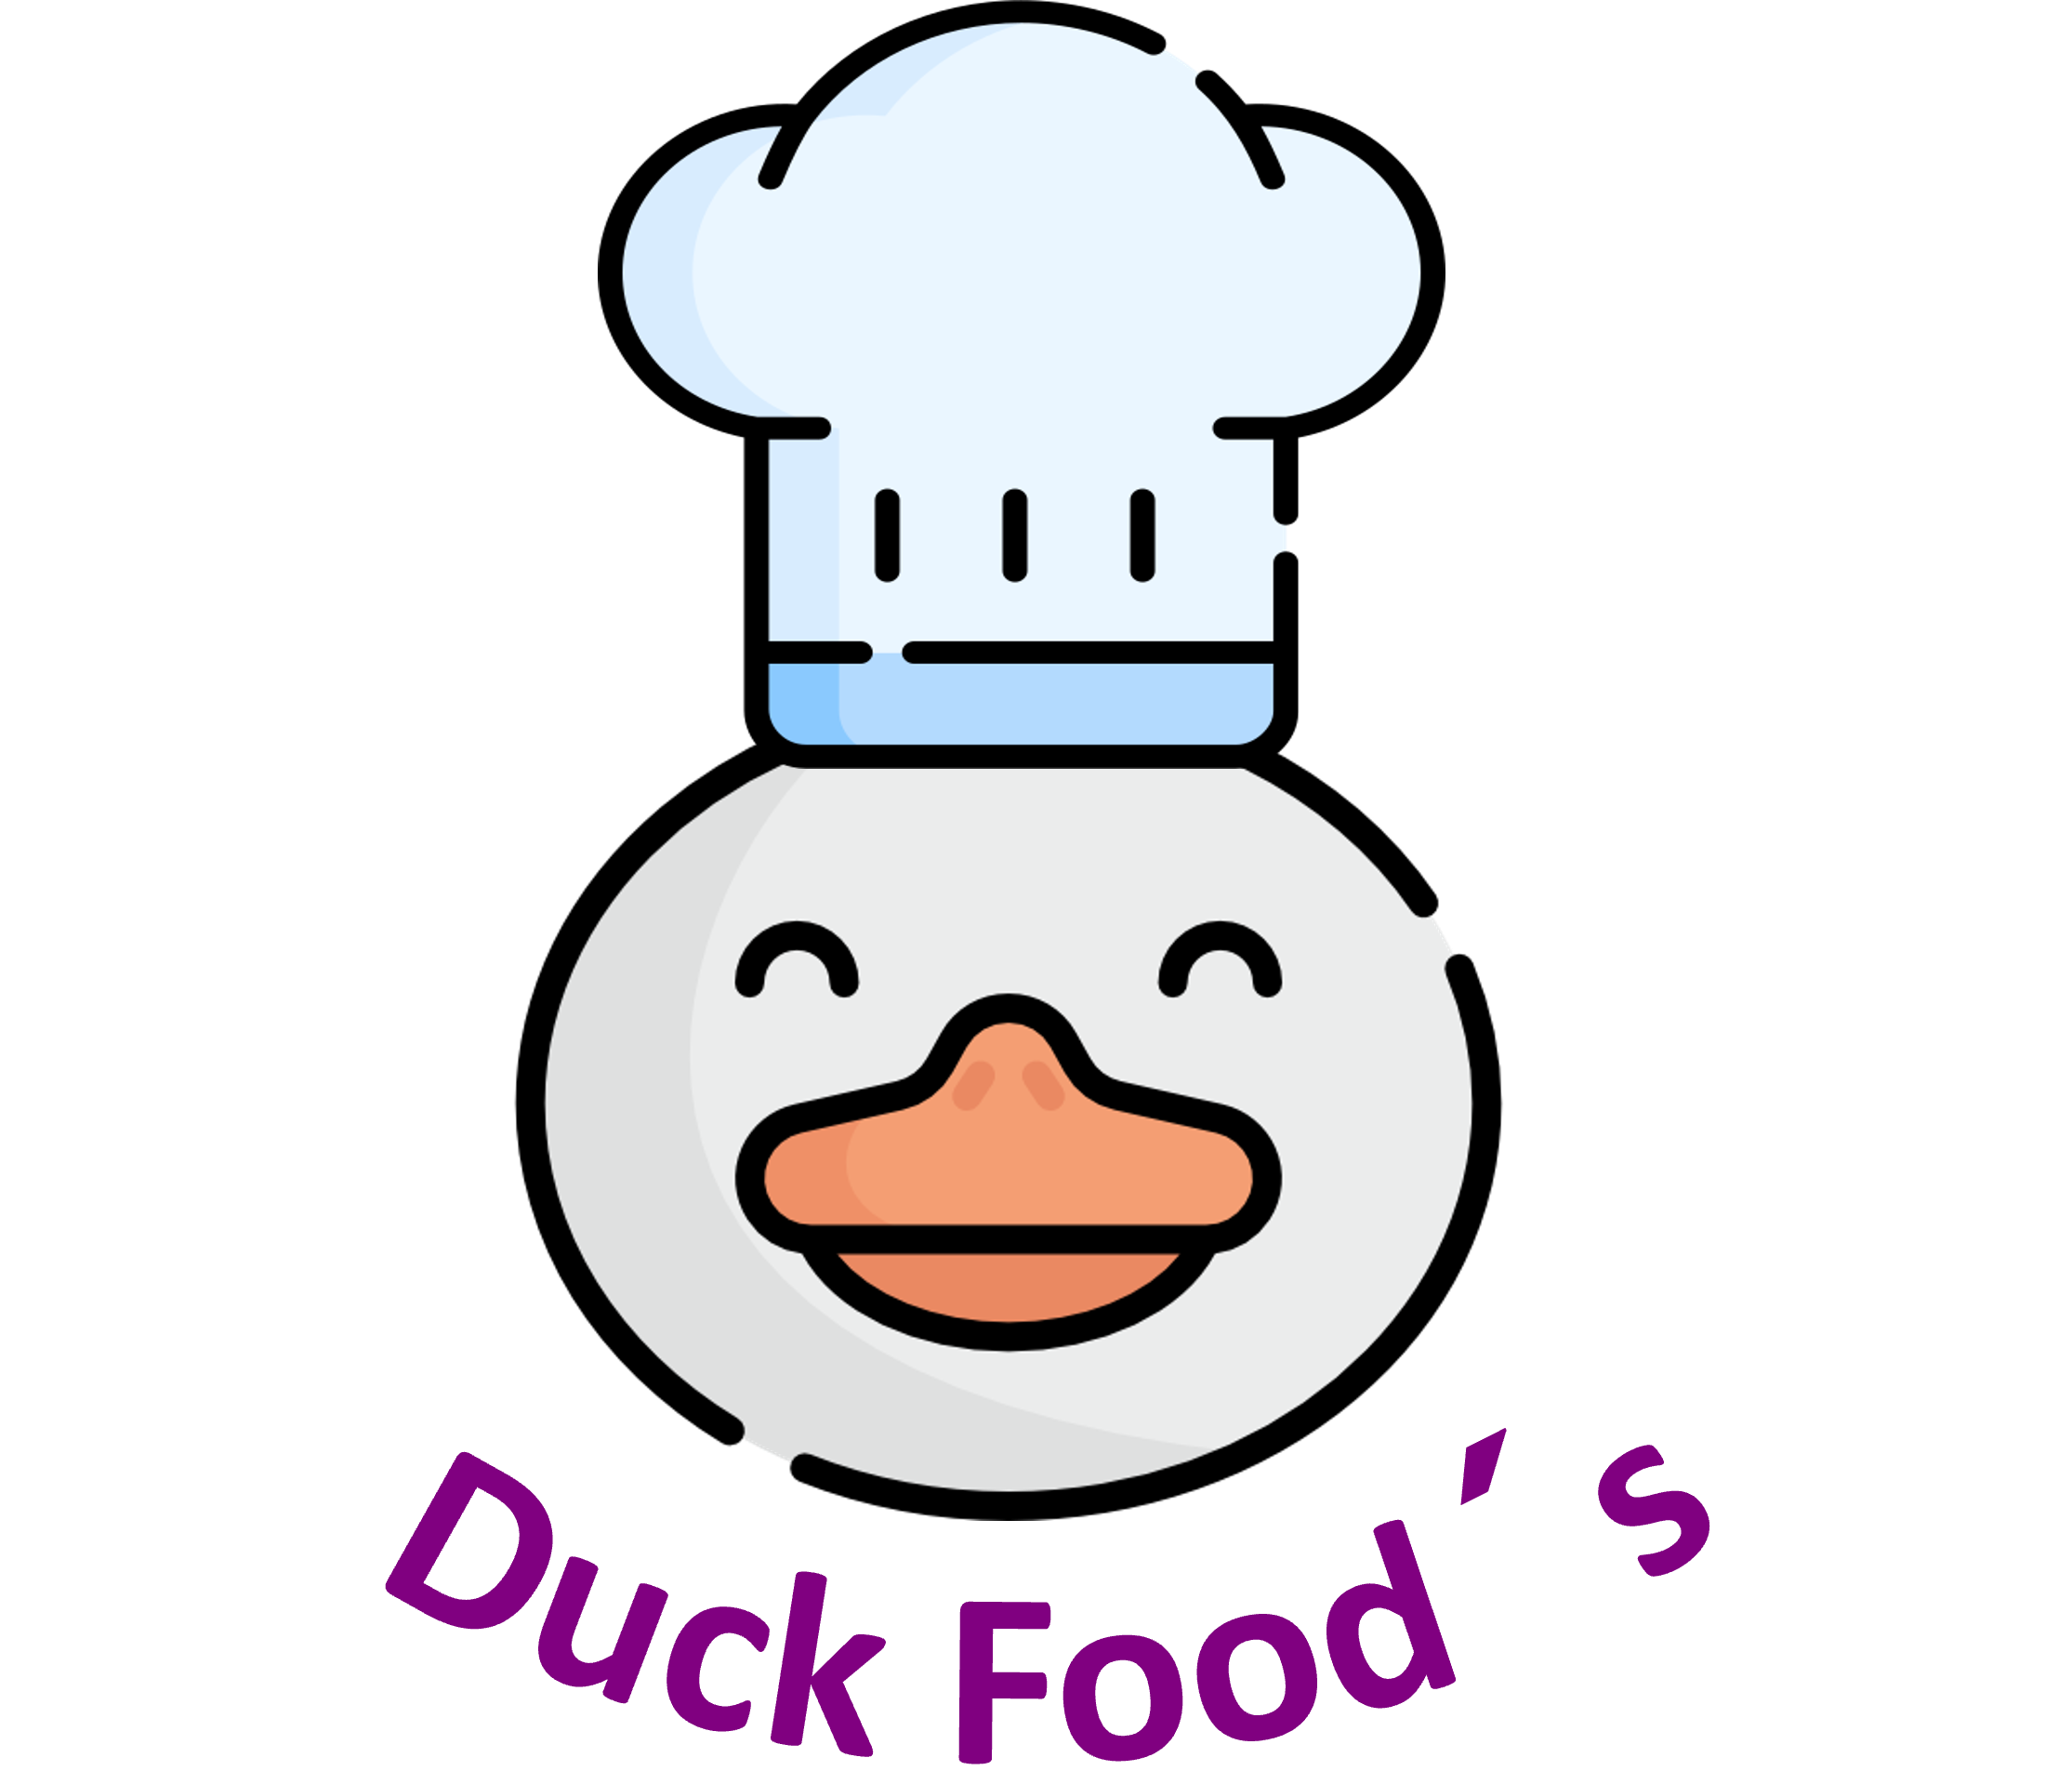 Duck Food´s